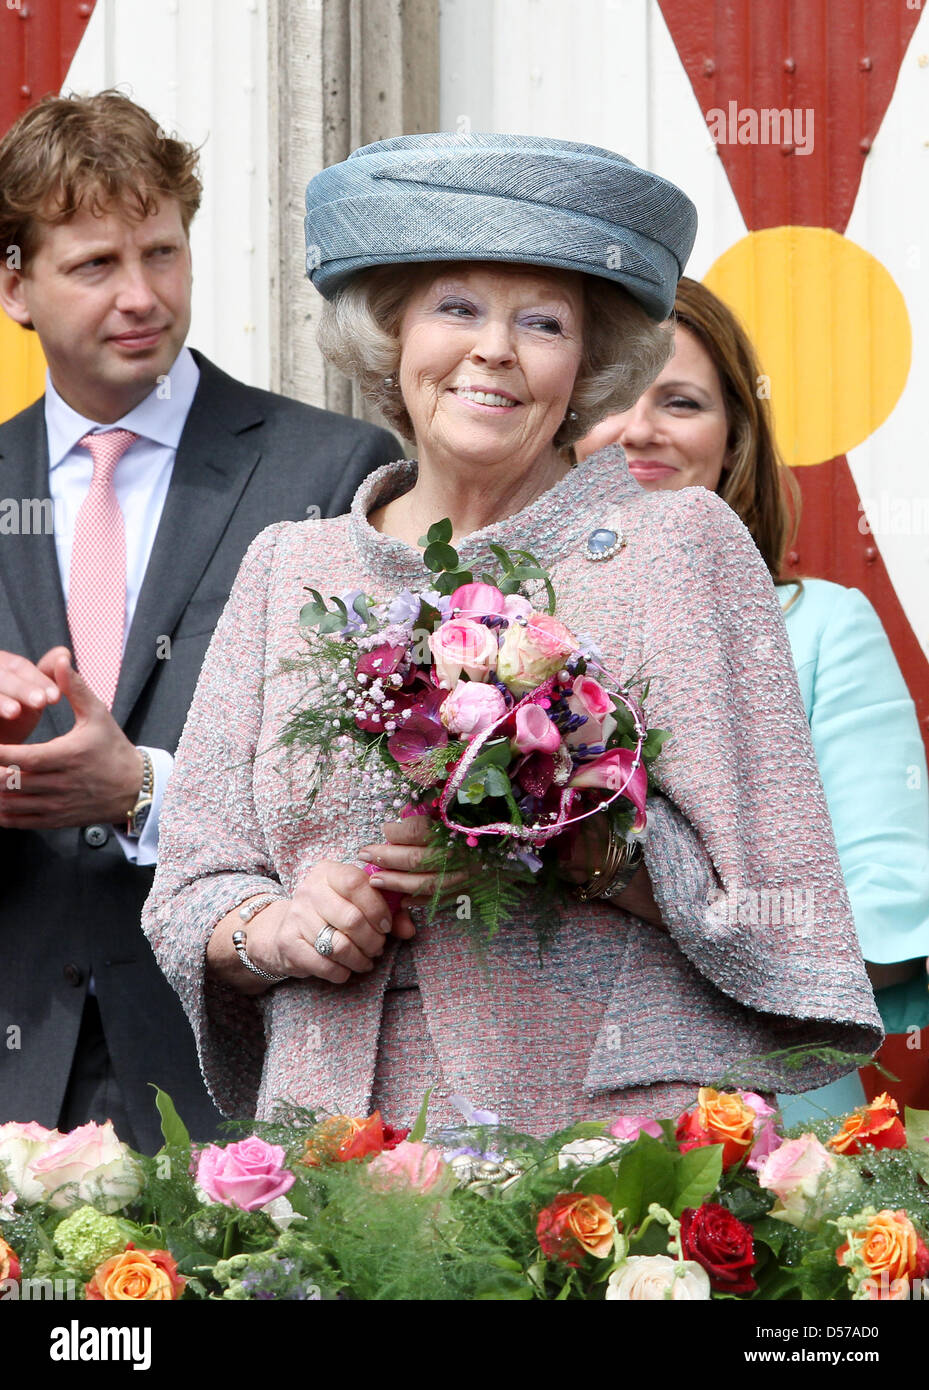 Queen Beatrix of the Netherlands attends the Queensday (Koninginnedag) celebrations in Wemeldinge, The Netherlands, 30 April 2010. Photo: Patrick van Katwijk Stock Photo